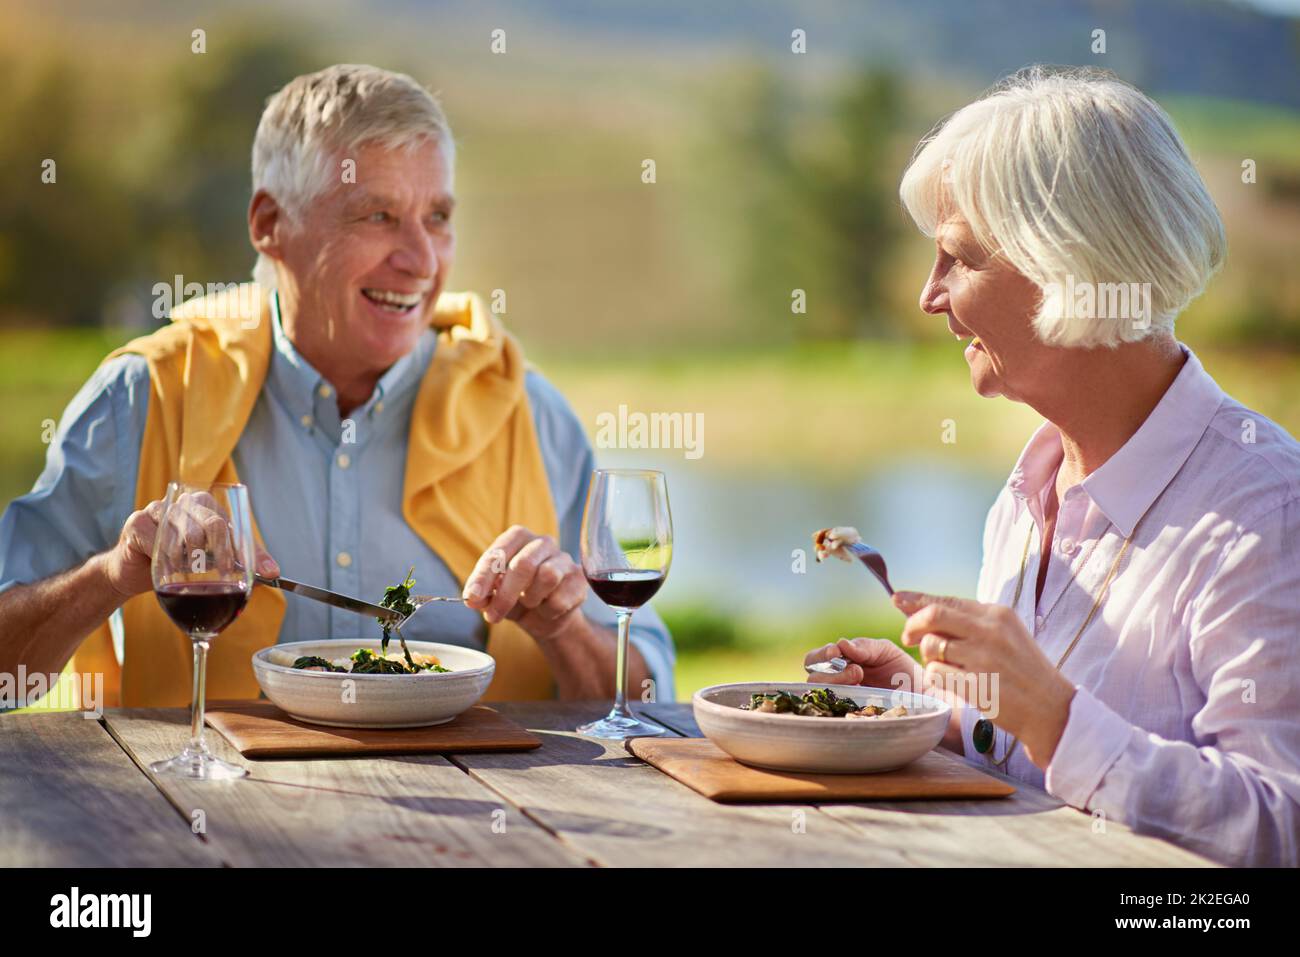 Noch in ihren älteren Jahren datierend. Ein kurzer Schuss eines älteren Ehepaares, das Wein trinkt, während er im Freien eine Mahlzeit genießt. Stockfoto